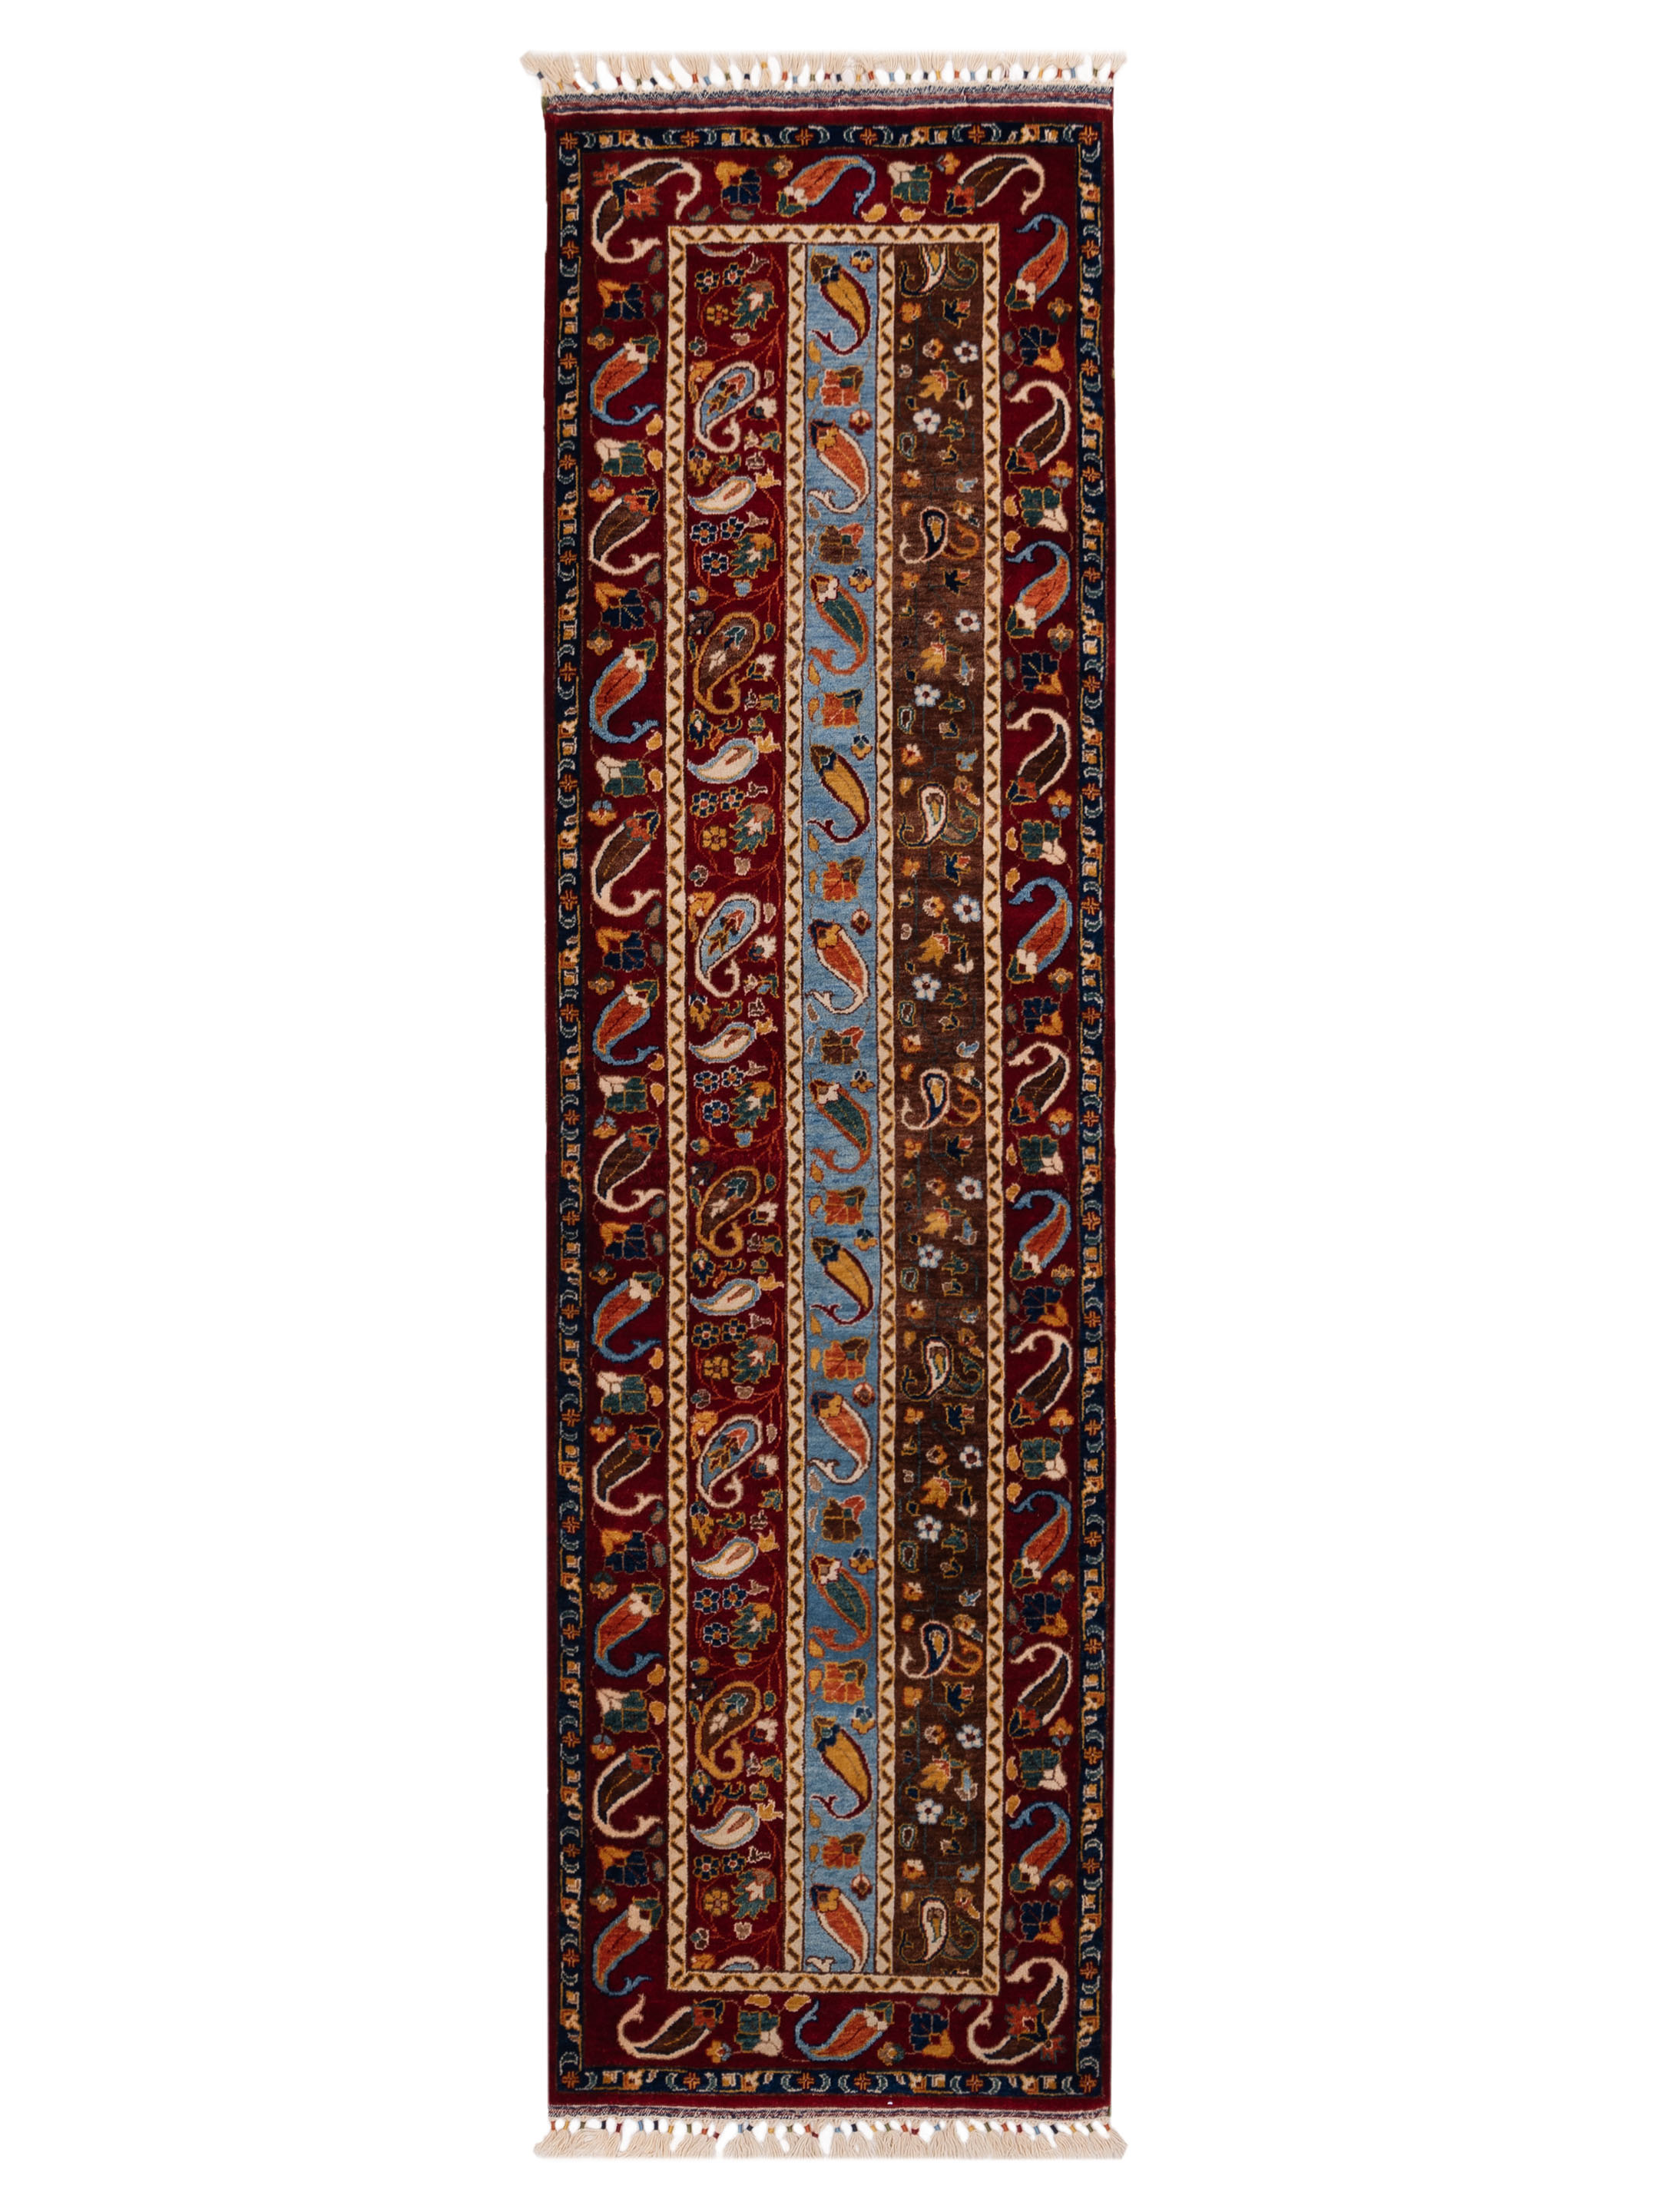 Tribal Geometric Multi color runner rug	